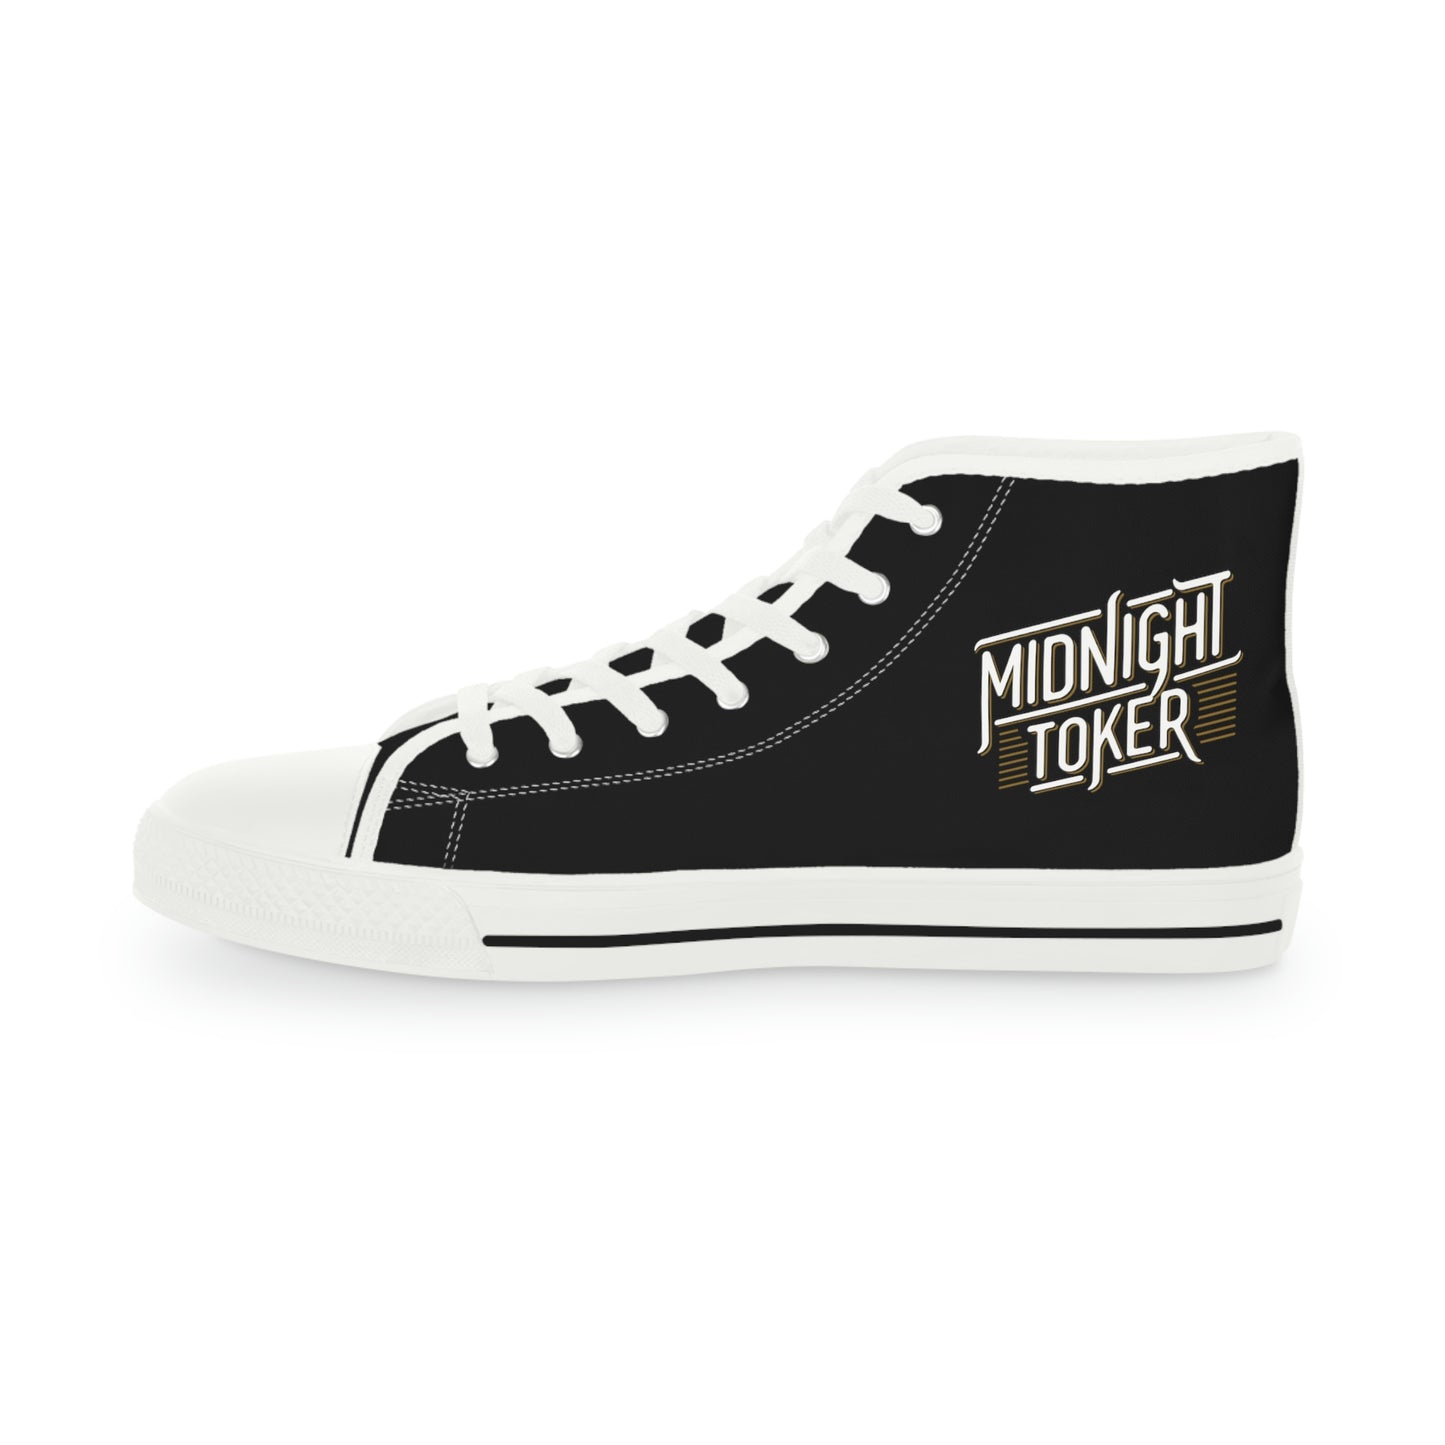 Midnight Toker - Men's High Top Sneakers